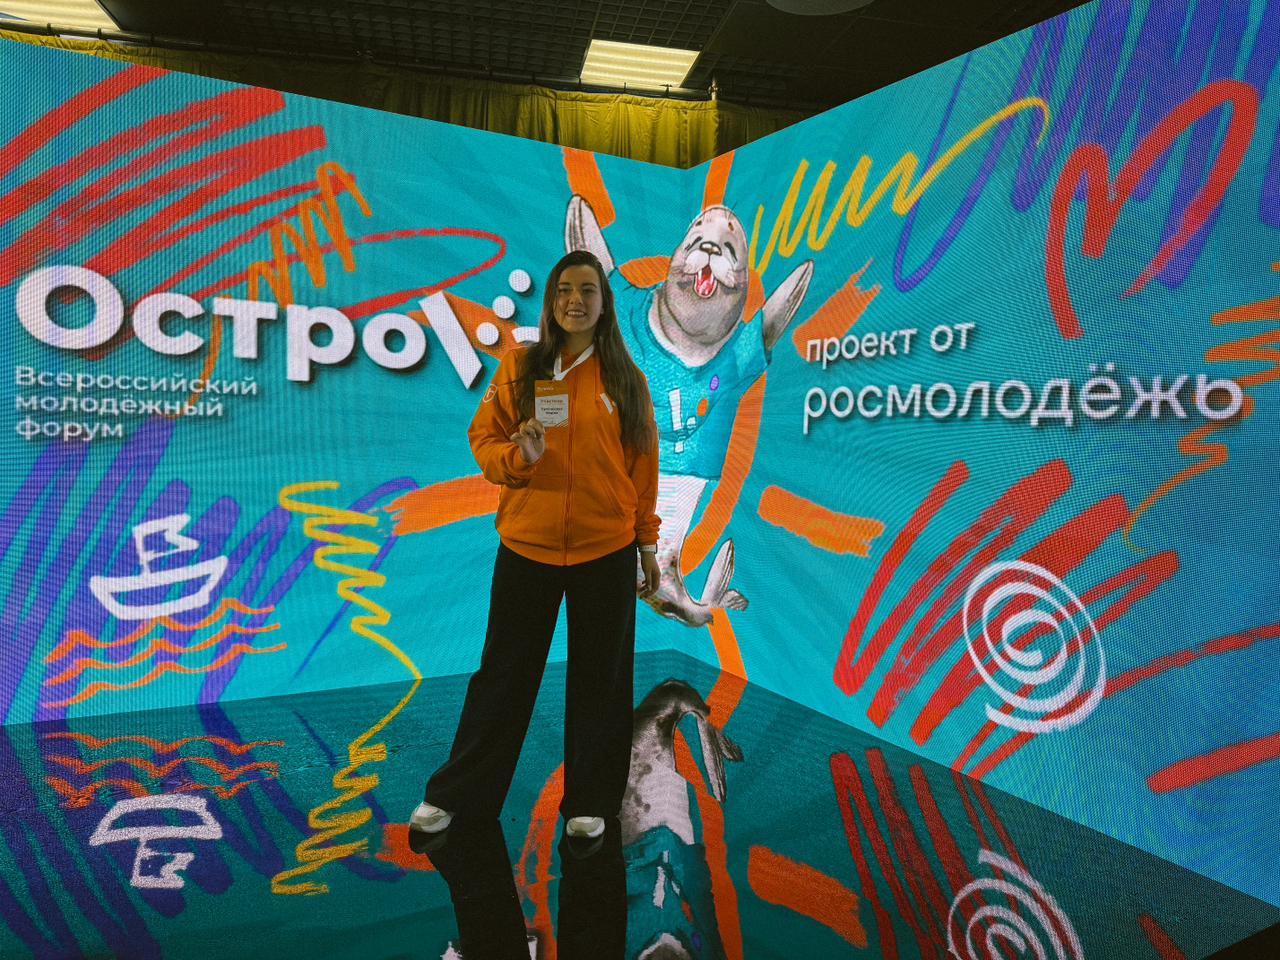 Орловчанка стала участницей всероссийского молодёжного форума «ОстроVа»